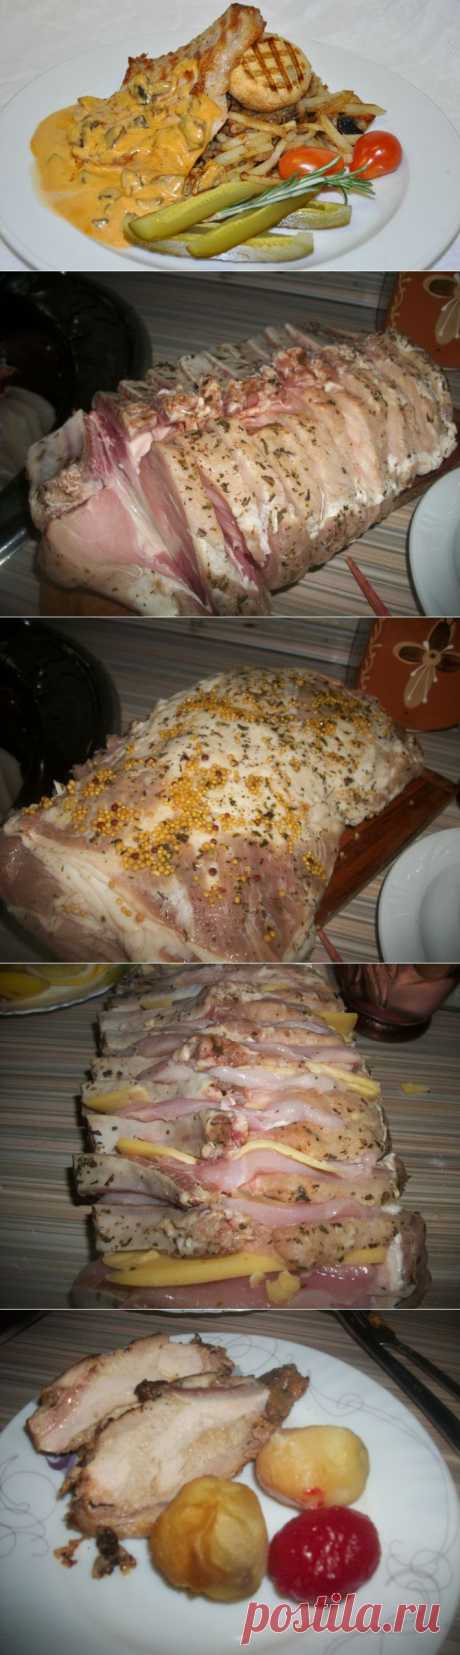 (+1) тема - Свинина прослоеная сыром с куриной грудкой | Любимые рецепты